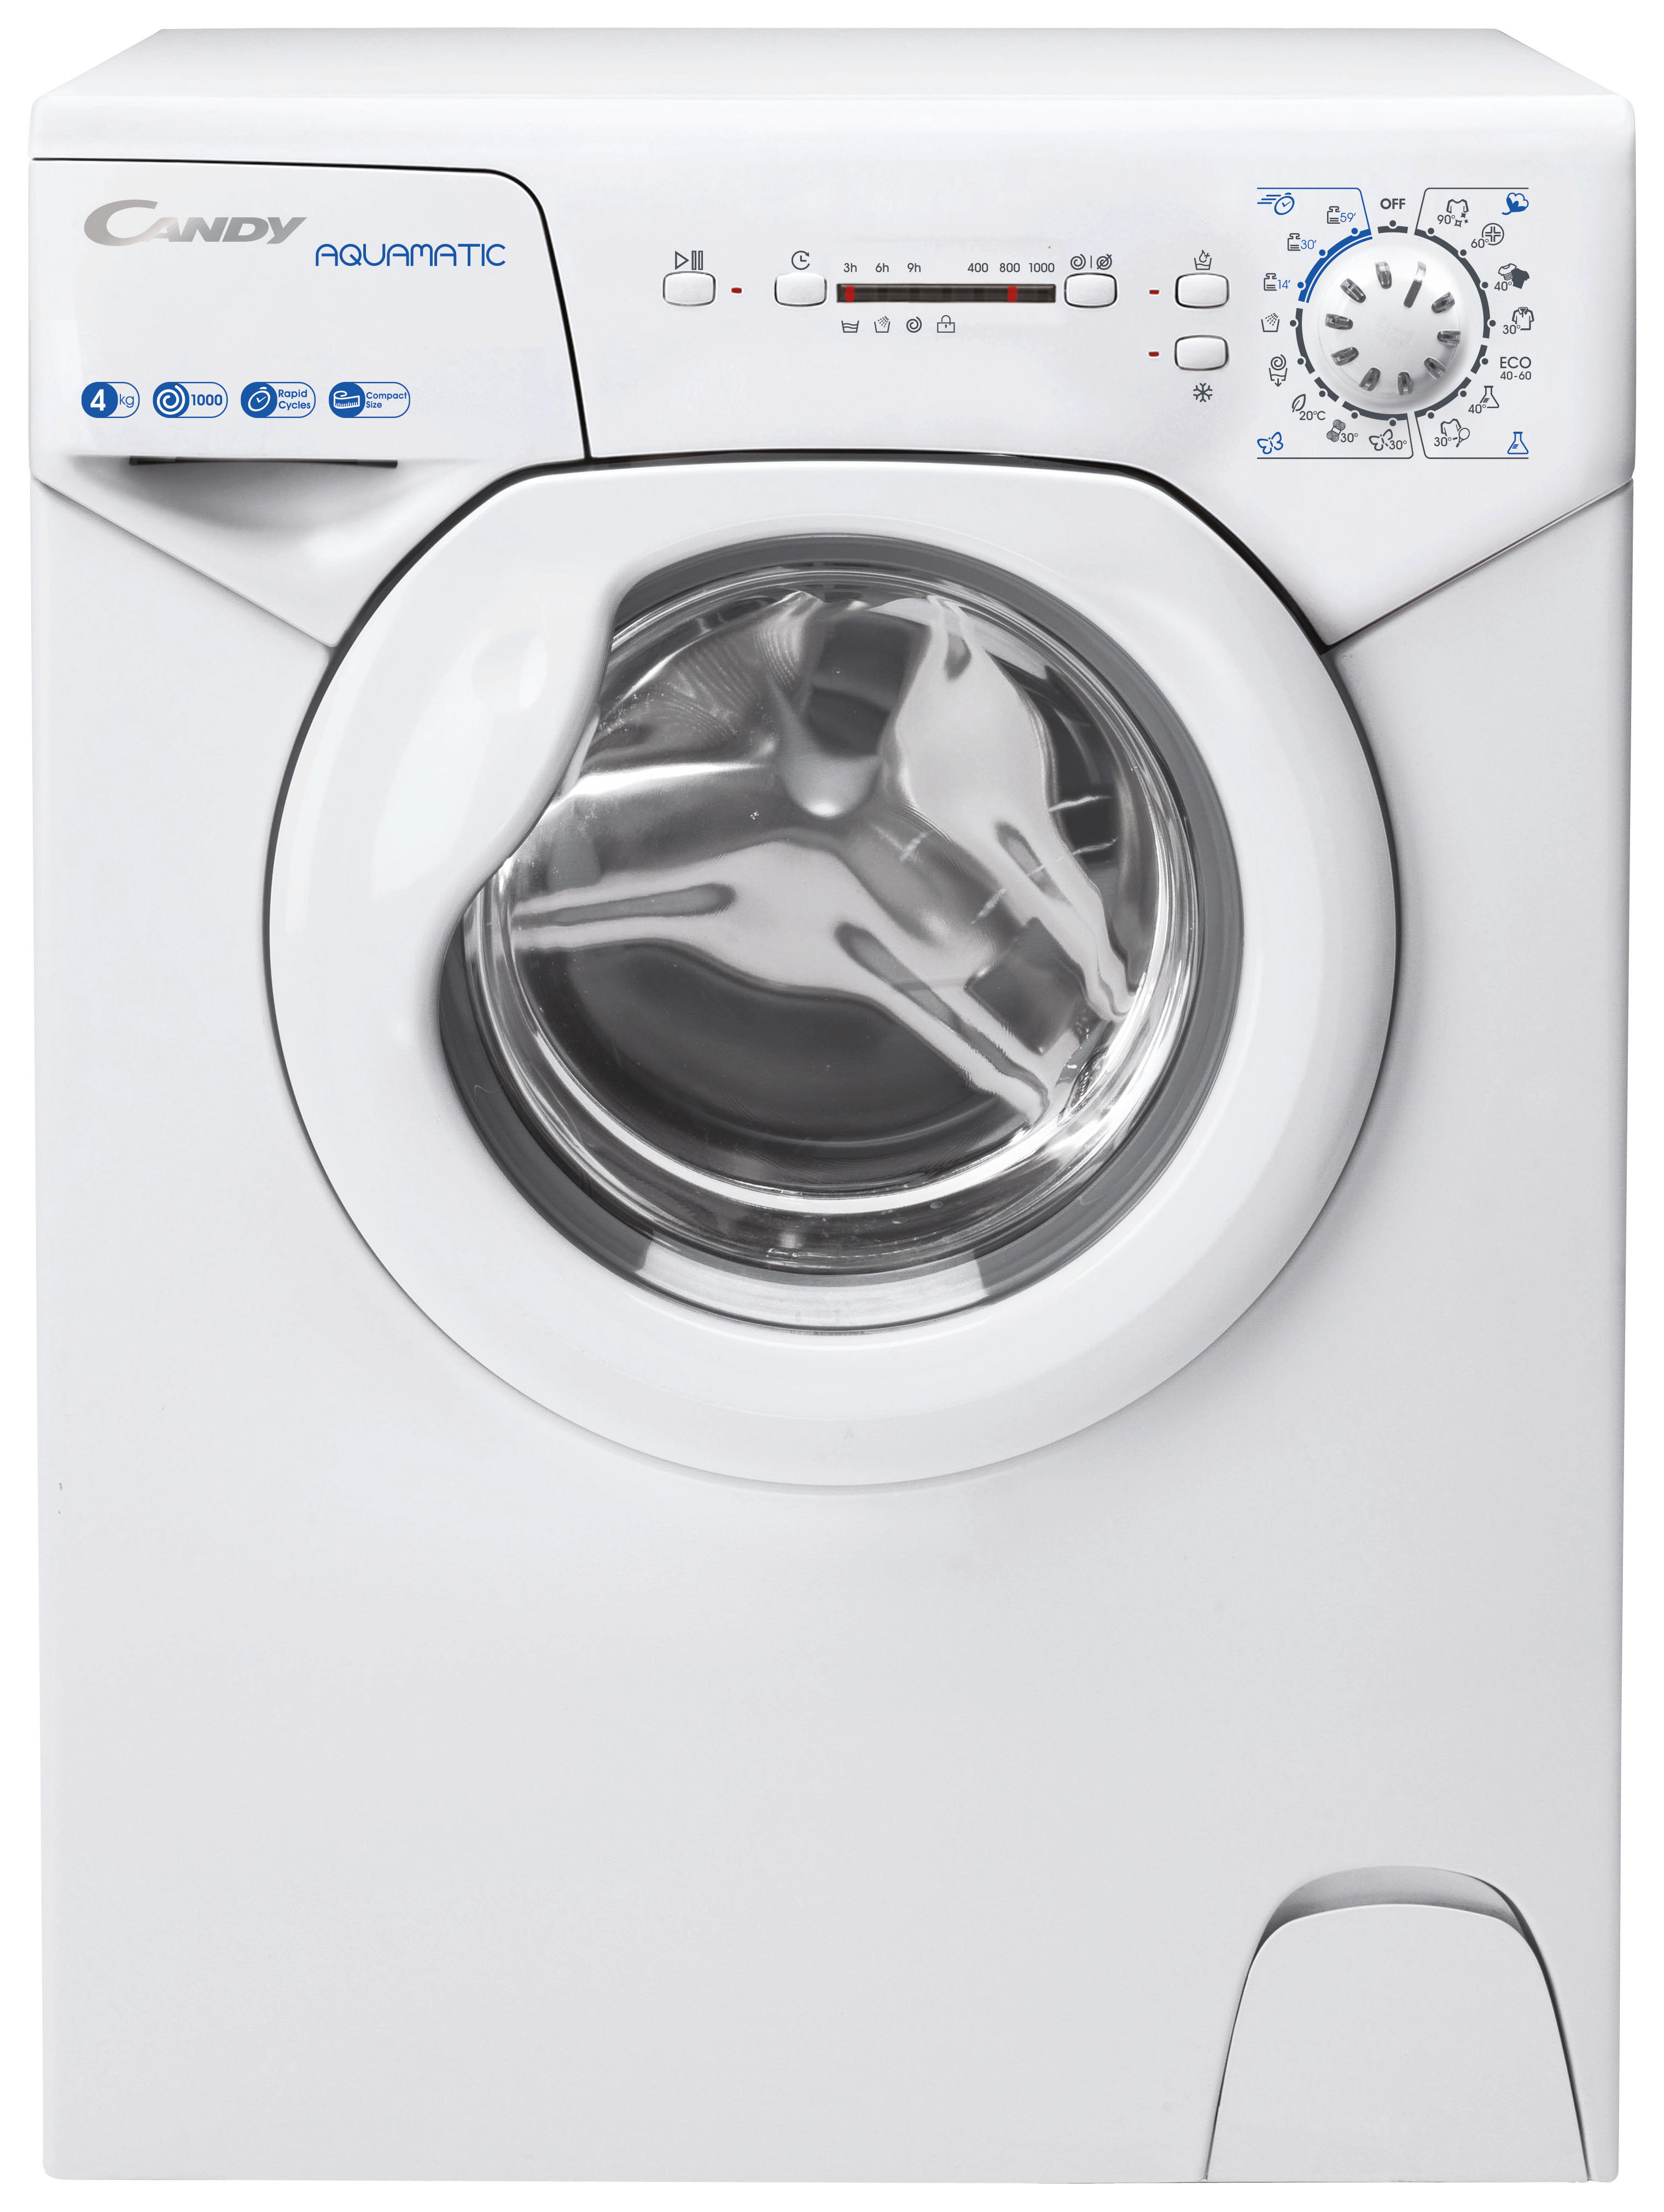 Sonderangebot waschmaschine - Die qualitativsten Sonderangebot waschmaschine verglichen!